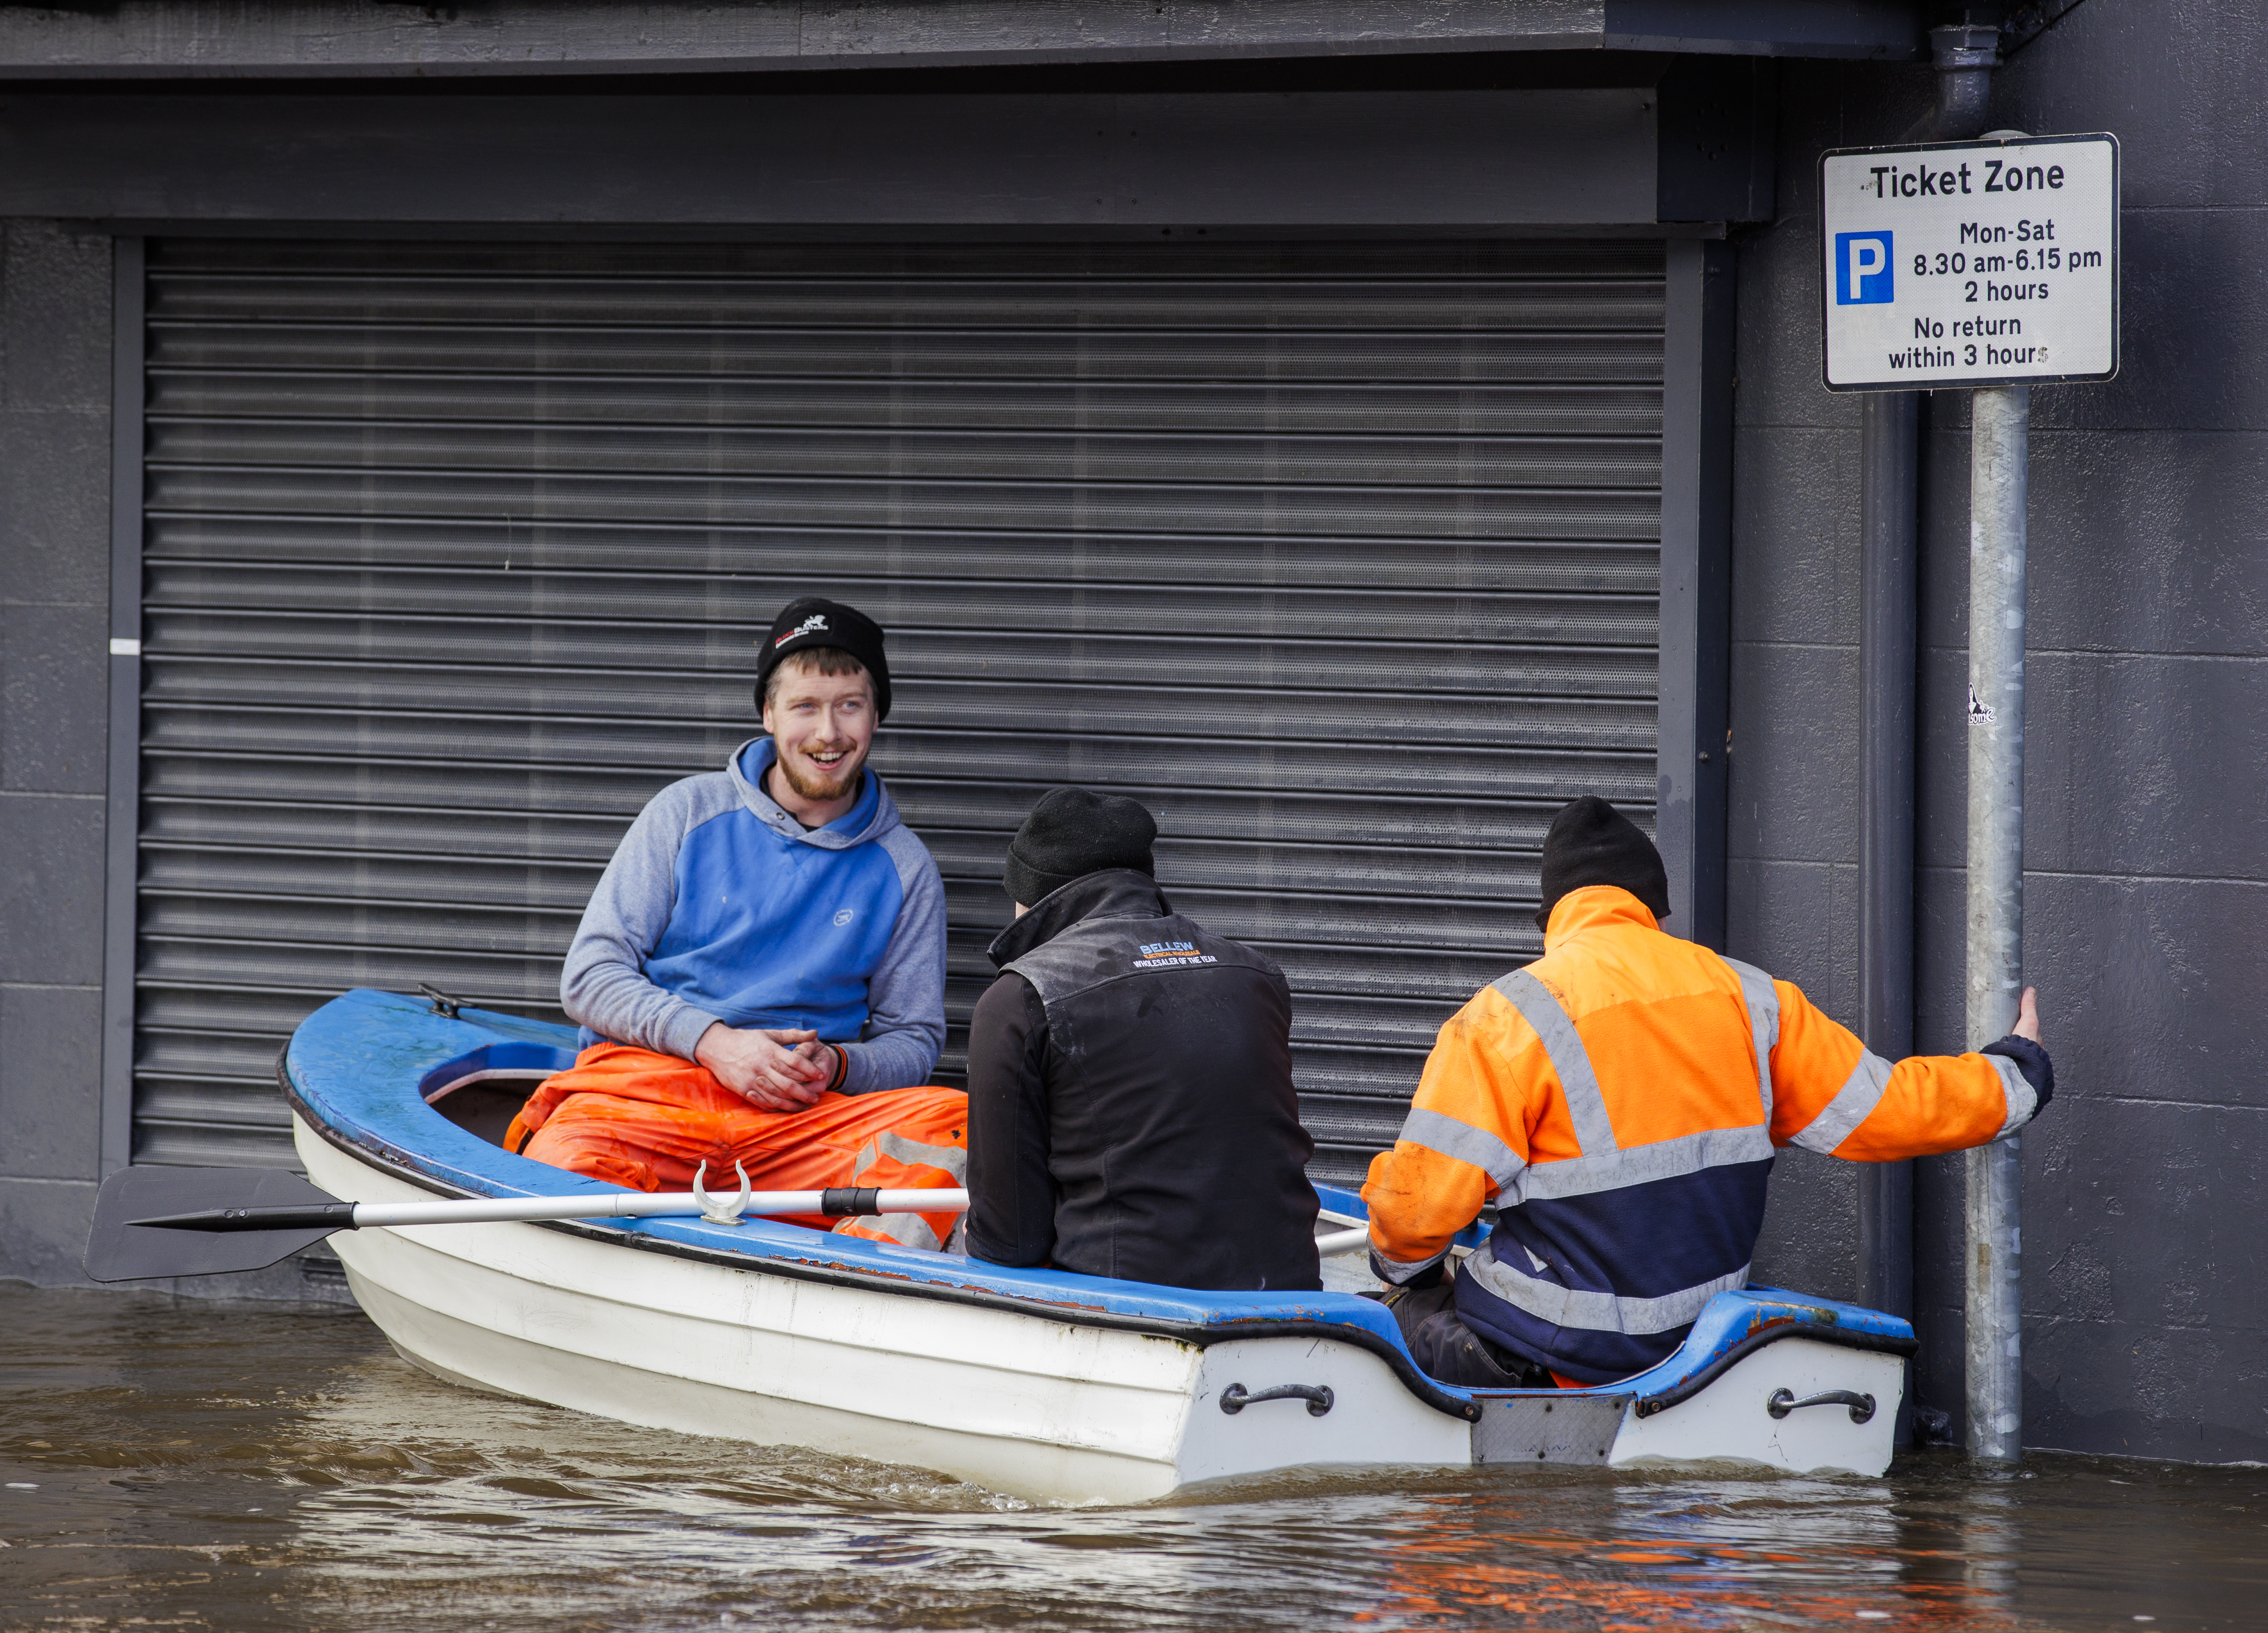 Menschen fahren am Dienstag mit dem Kanu eine überflutete Bank Parade in Nordirland hinunter